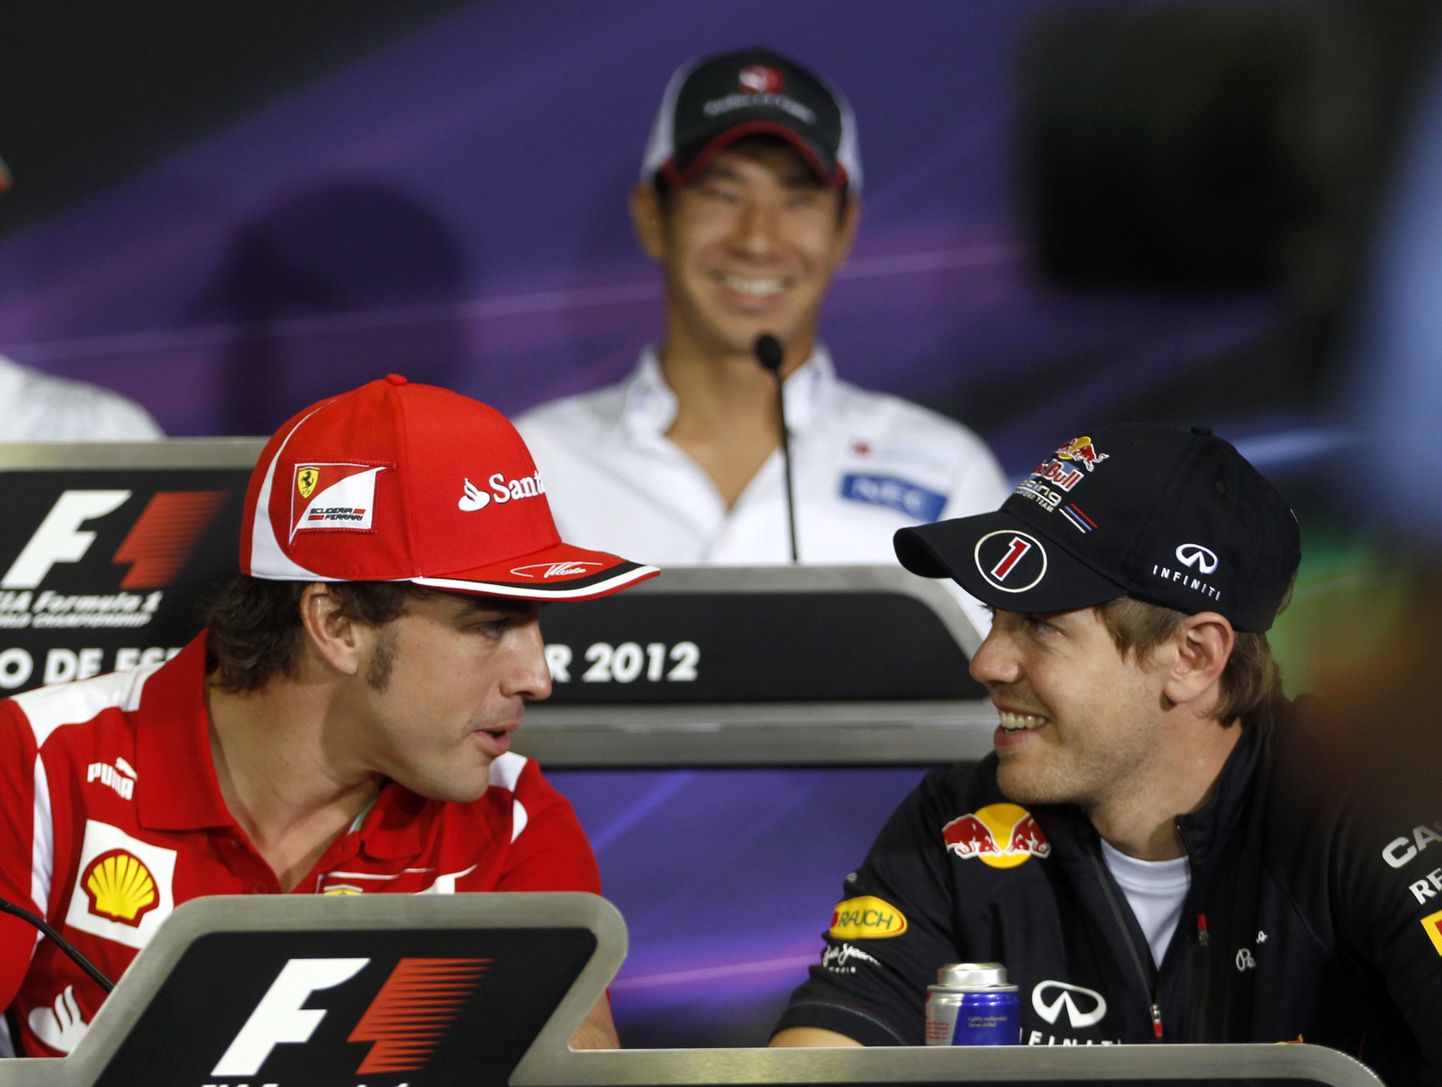 Hommikuse treeningu kaks kiireimat meest Fernando Alonso (vasakul) ja Sebastian Vettel.